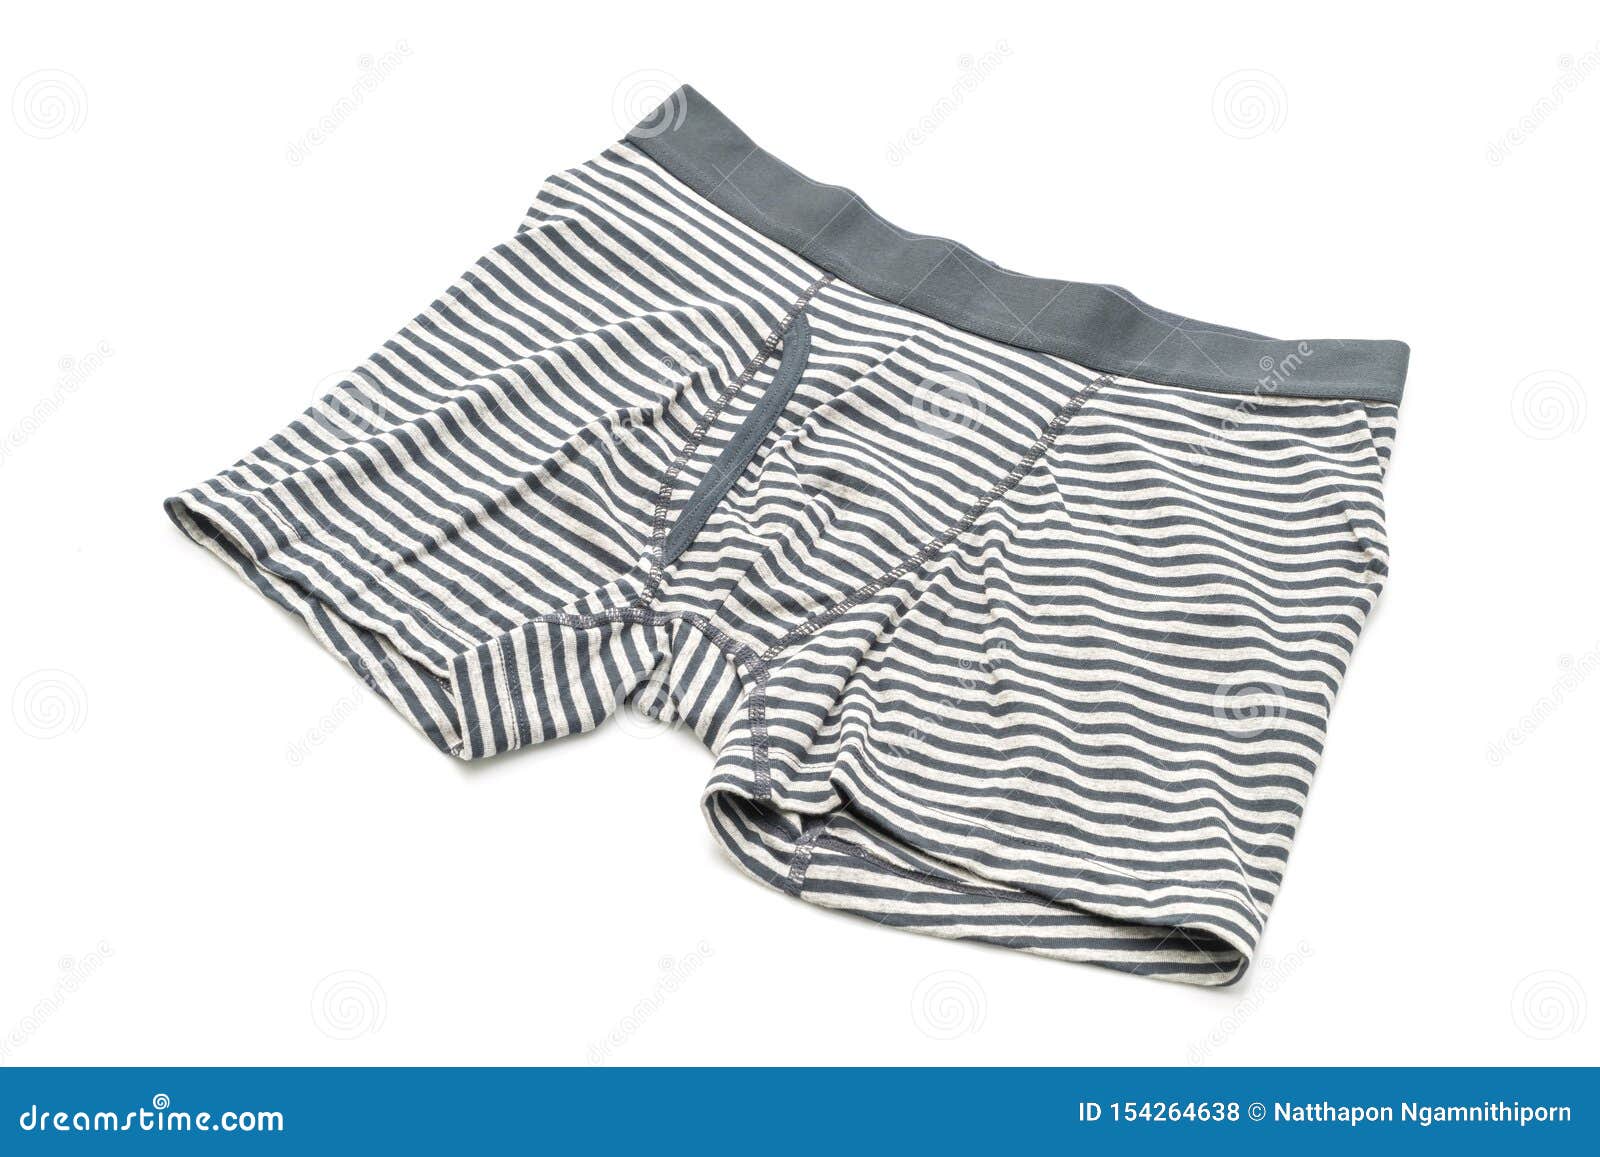 Striped men underwear stock photo. Image of briefs, cotton - 154264638